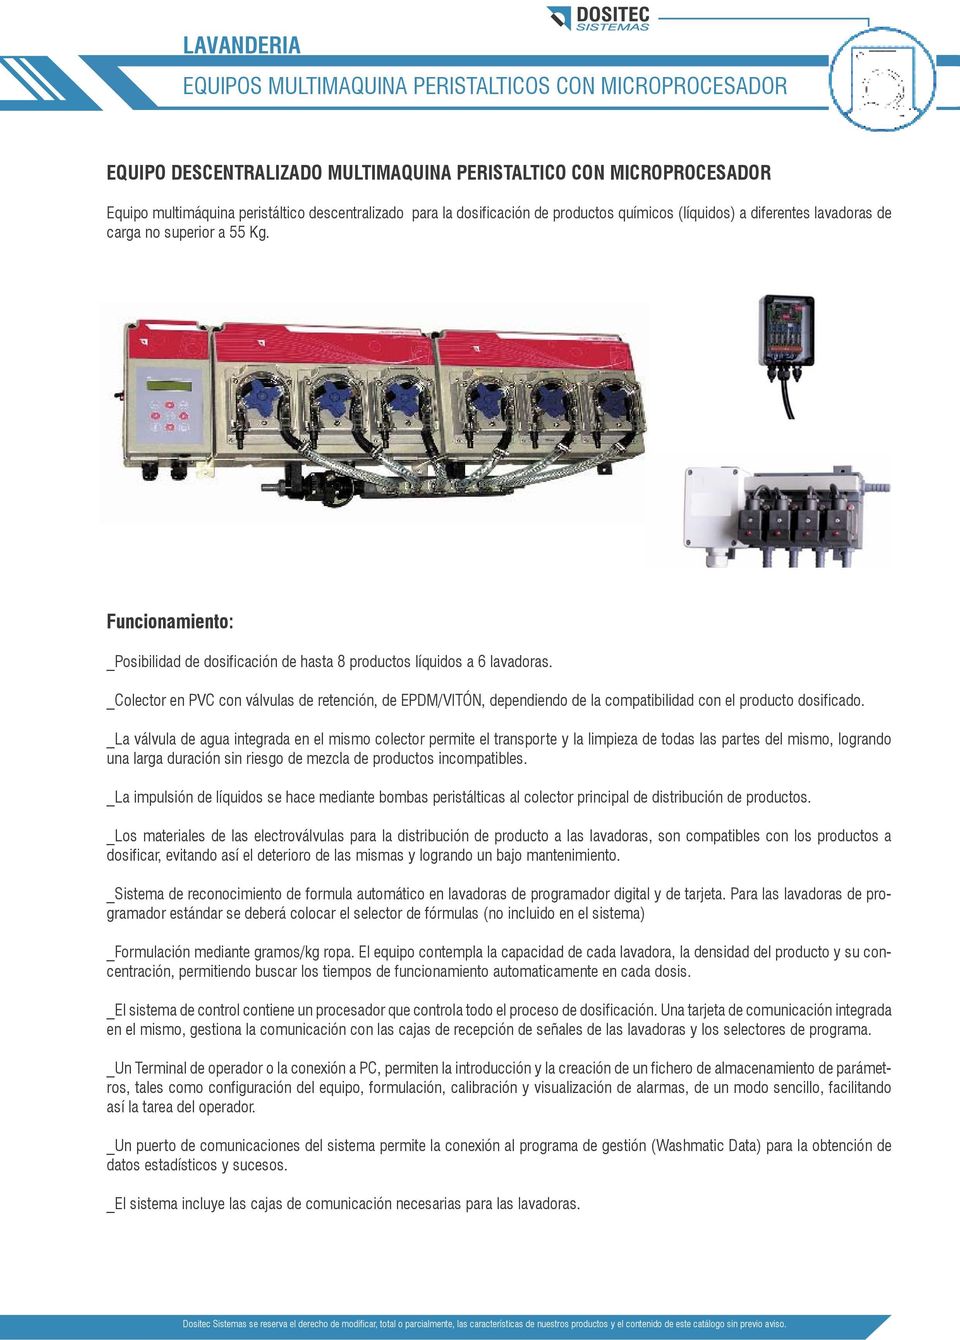 _Colector en PVC con válvulas de retención, de EPDM/VITÓN, dependiendo de la compatibilidad con el producto dosificado.